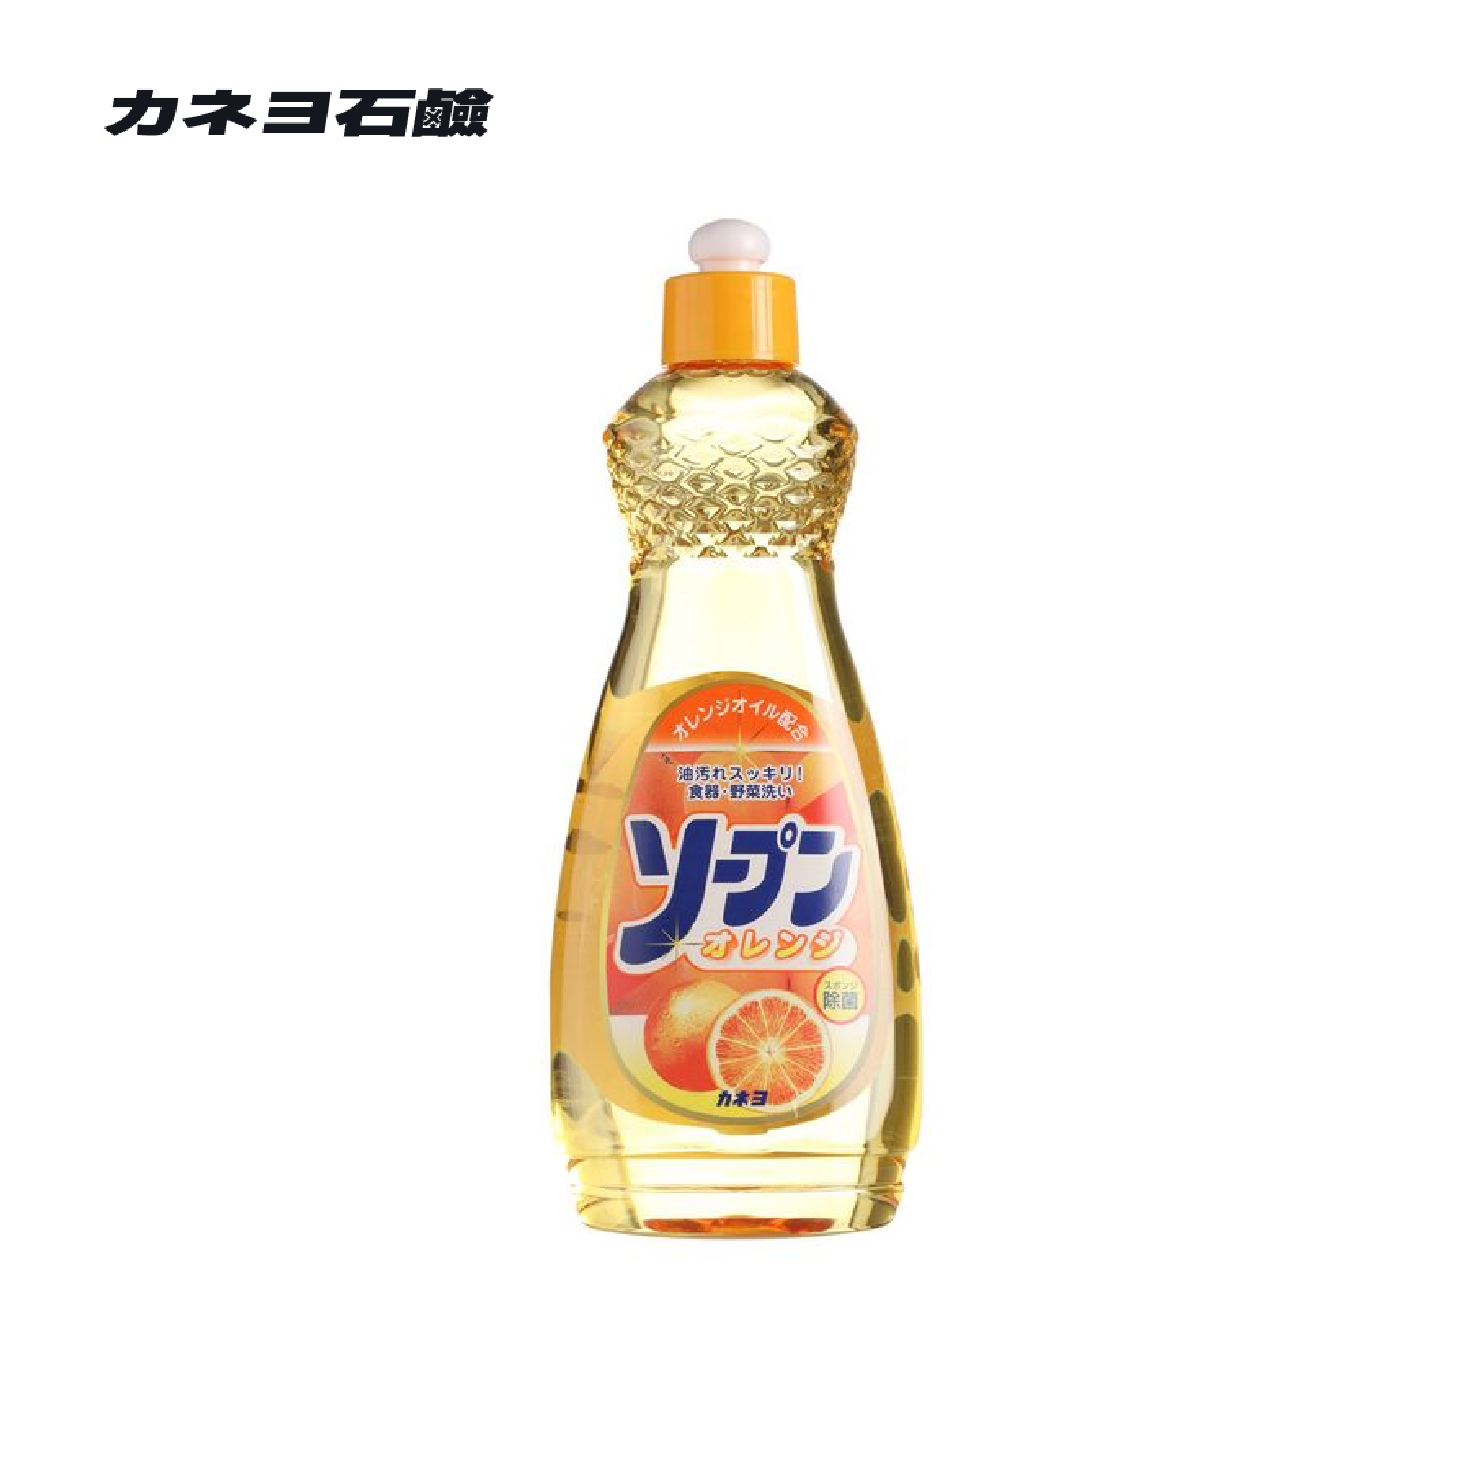 Kaneyo石鹼 | 天然成分洗洁精 | 橘子香 | 600g